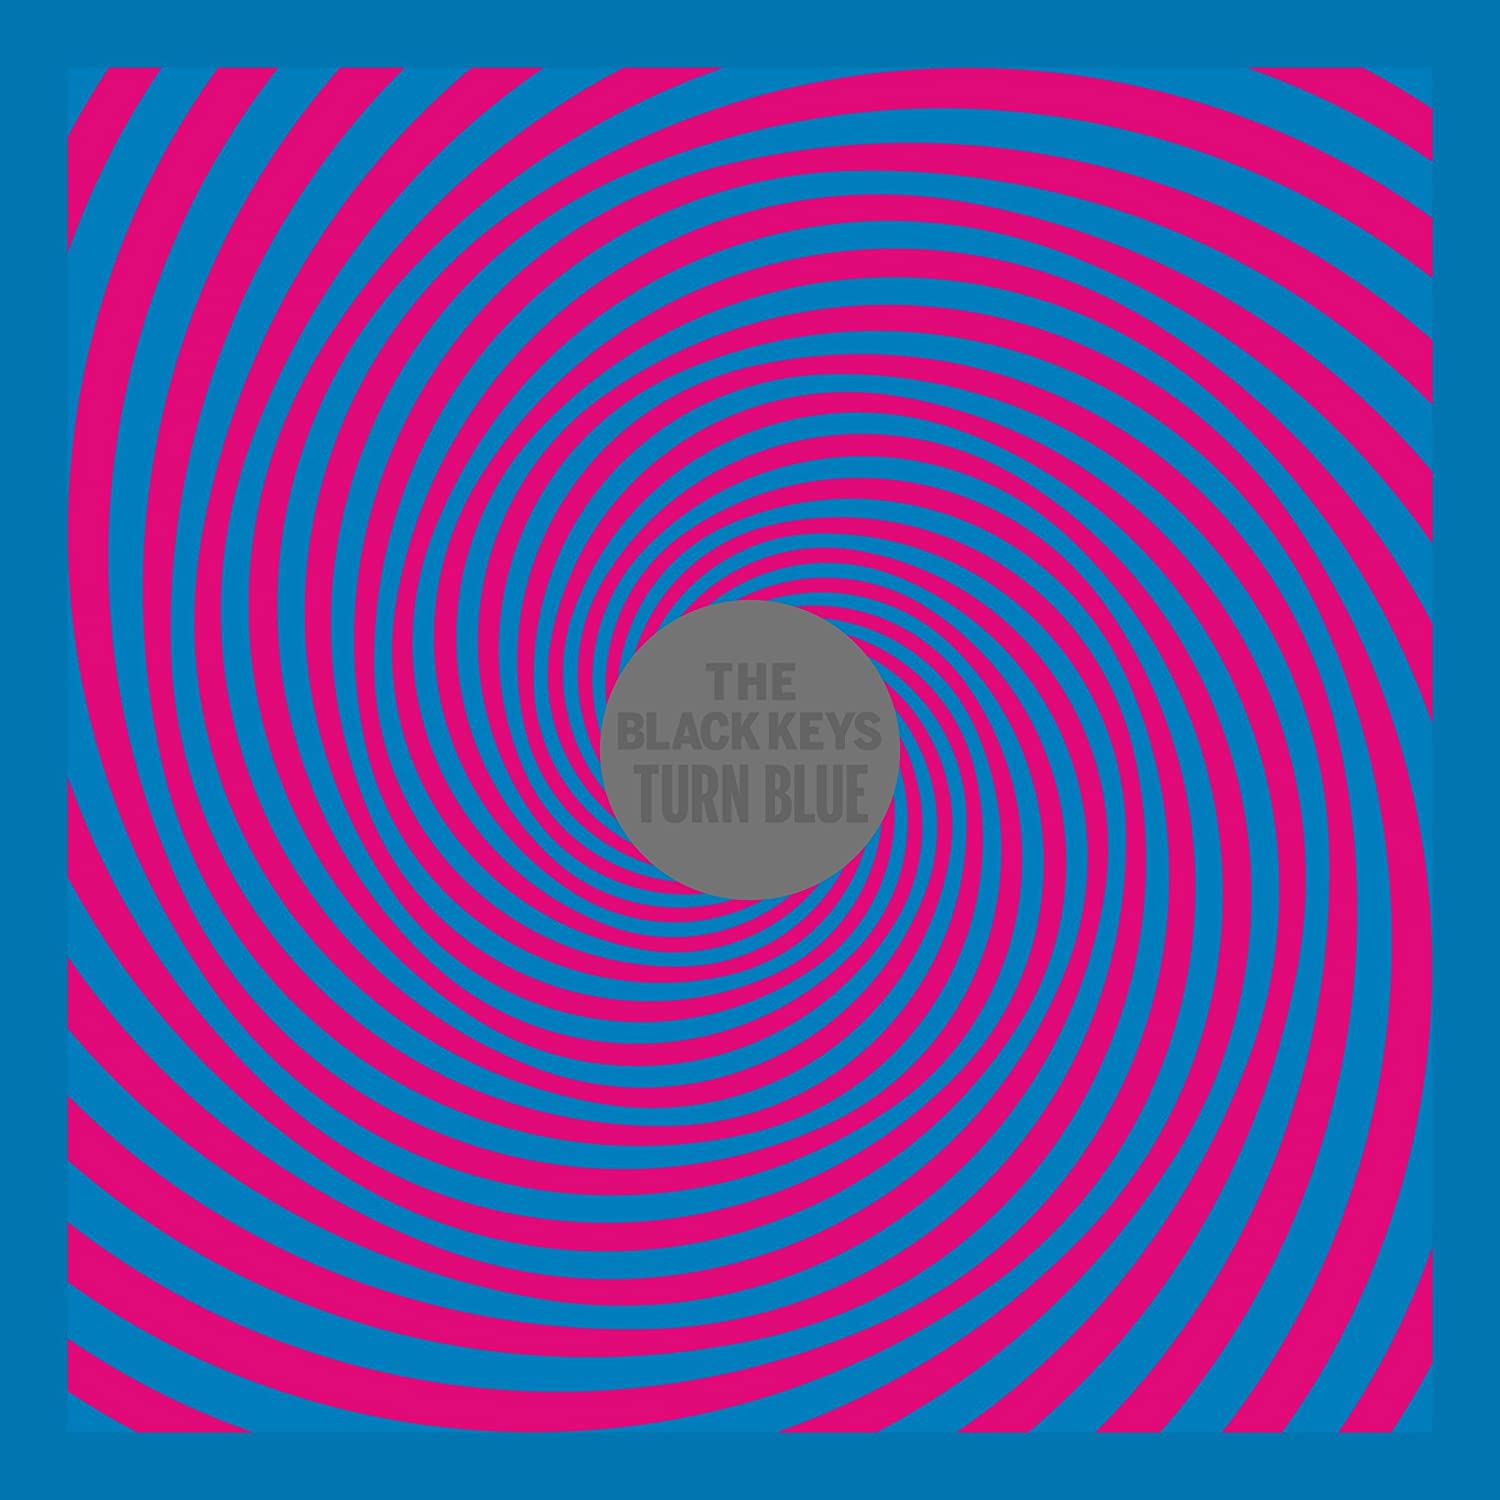 The Black Keys — Turn Blue cover artwork